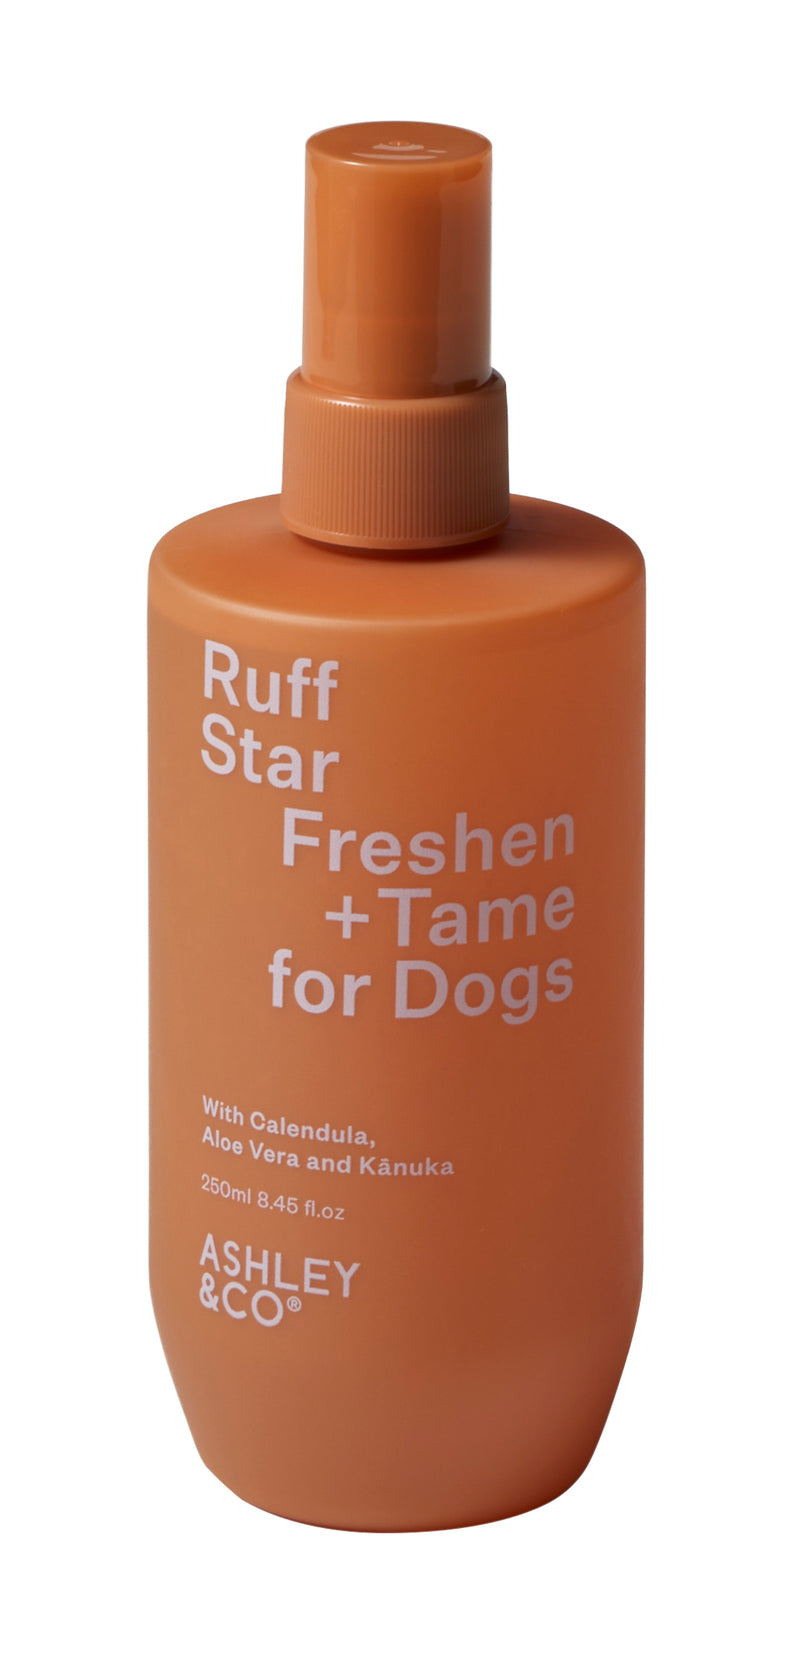 Ruff Star Freshening Dog Spray by Ashley & Co